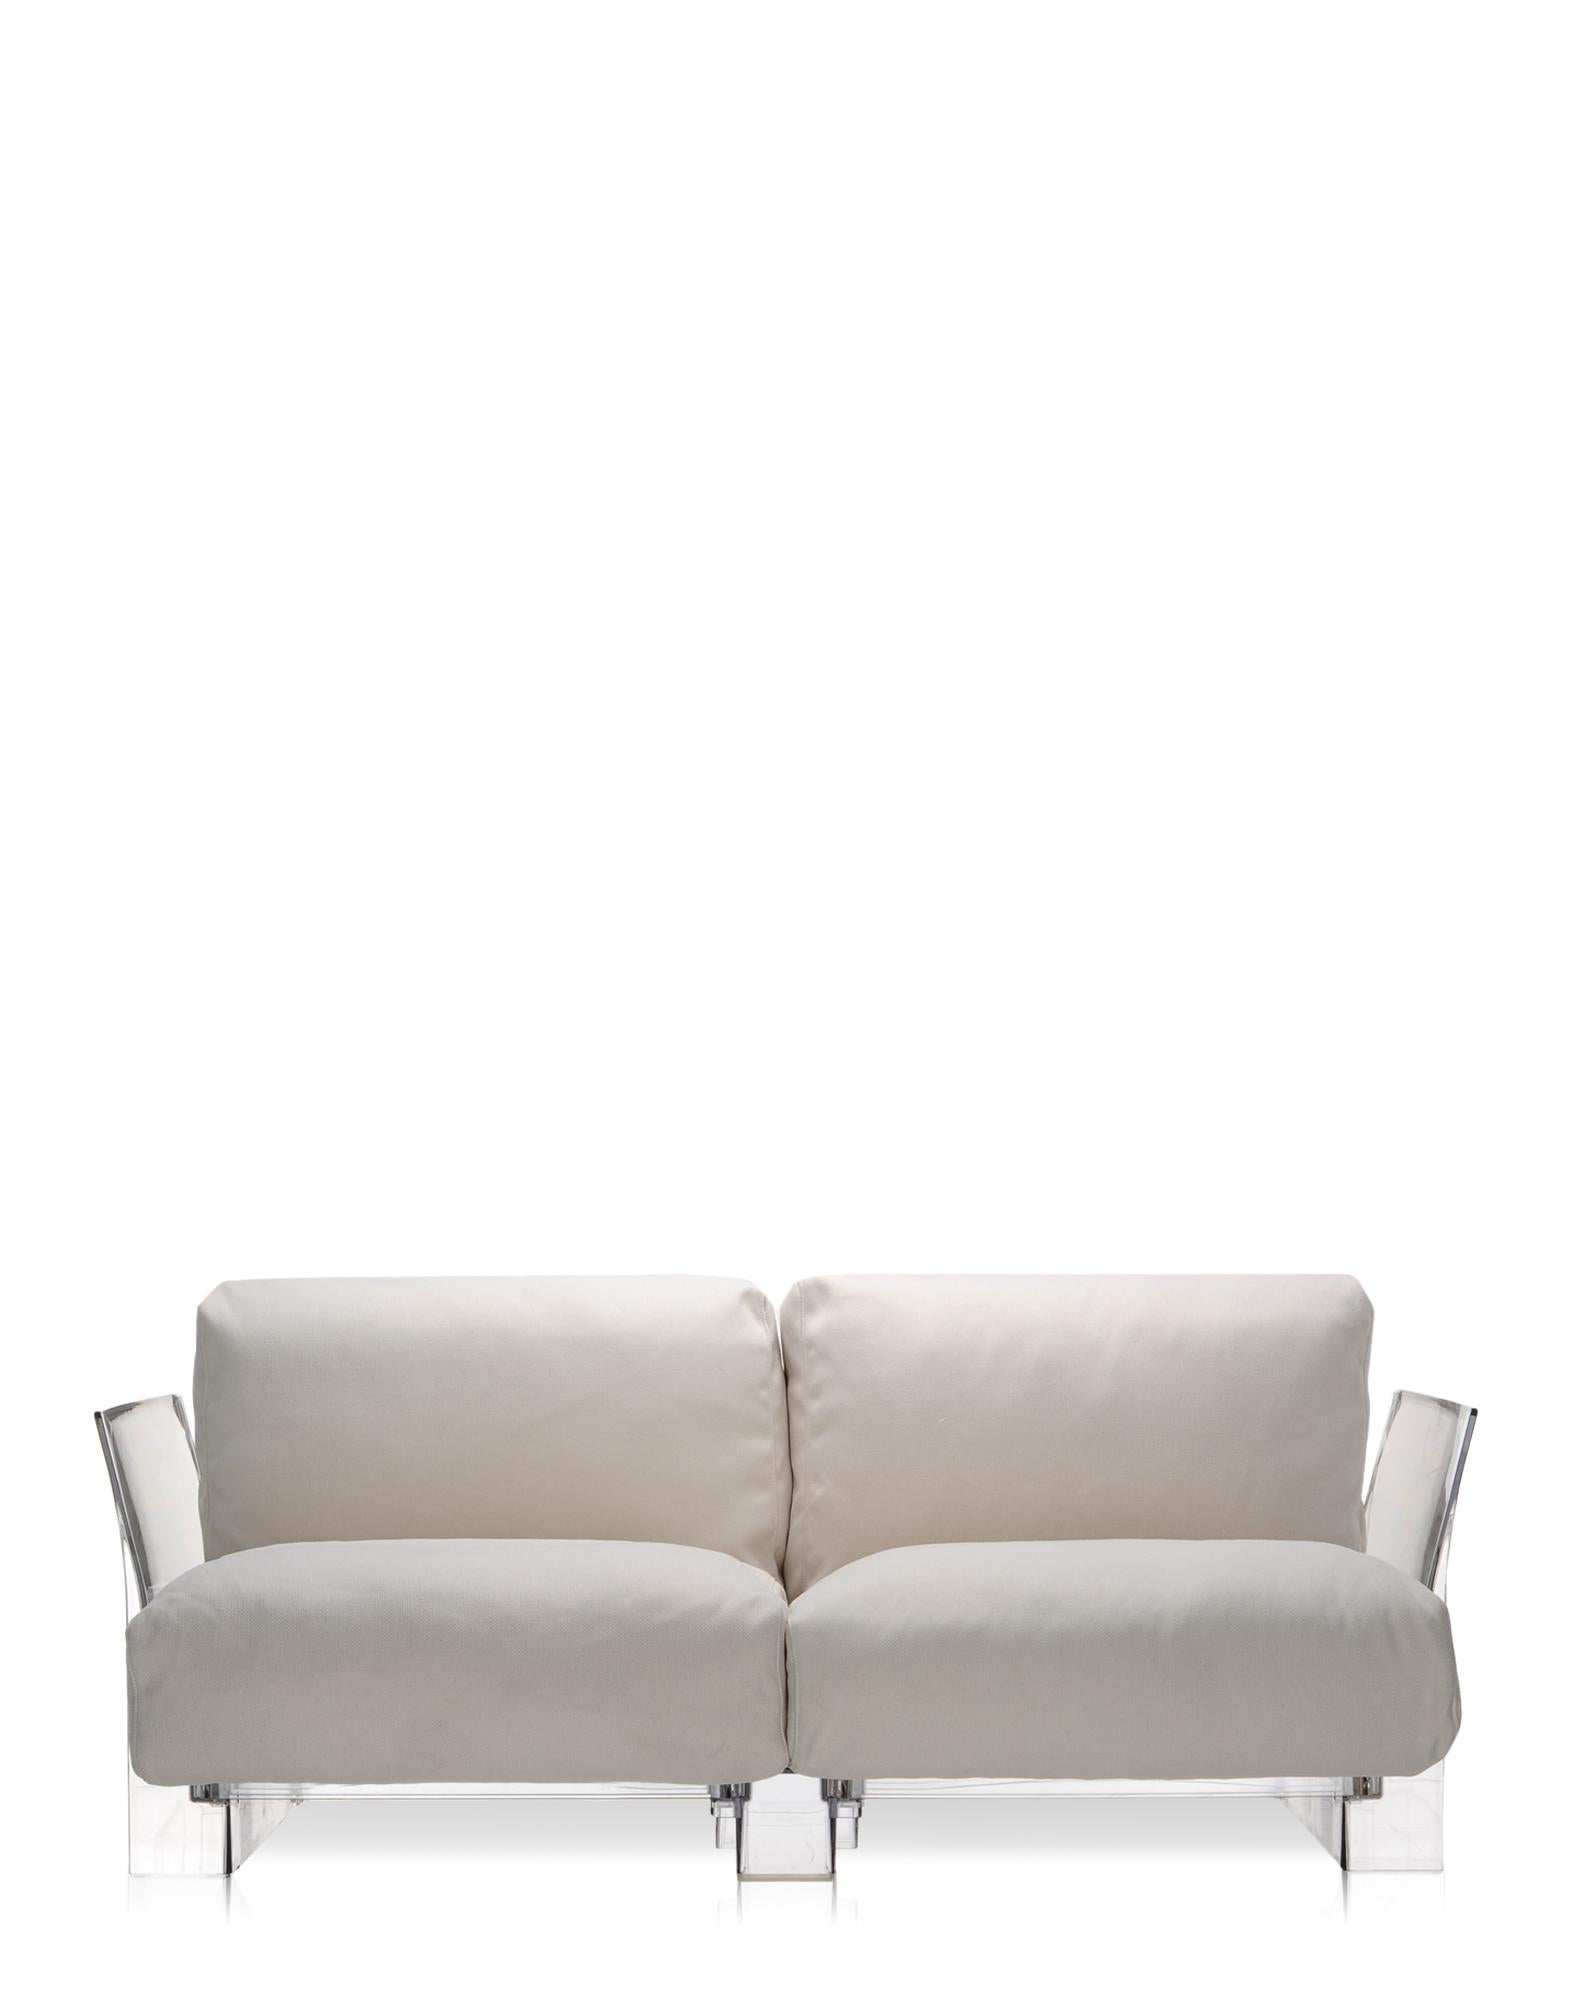 Pop outdoor est le canapé modulaire aux profils évanescents caractérisés par de grands coussins d'assise et de dossier qui le rendent doux et confortable, fabriqué avec des tissus conçus spécialement pour une utilisation extérieure. 
La collection